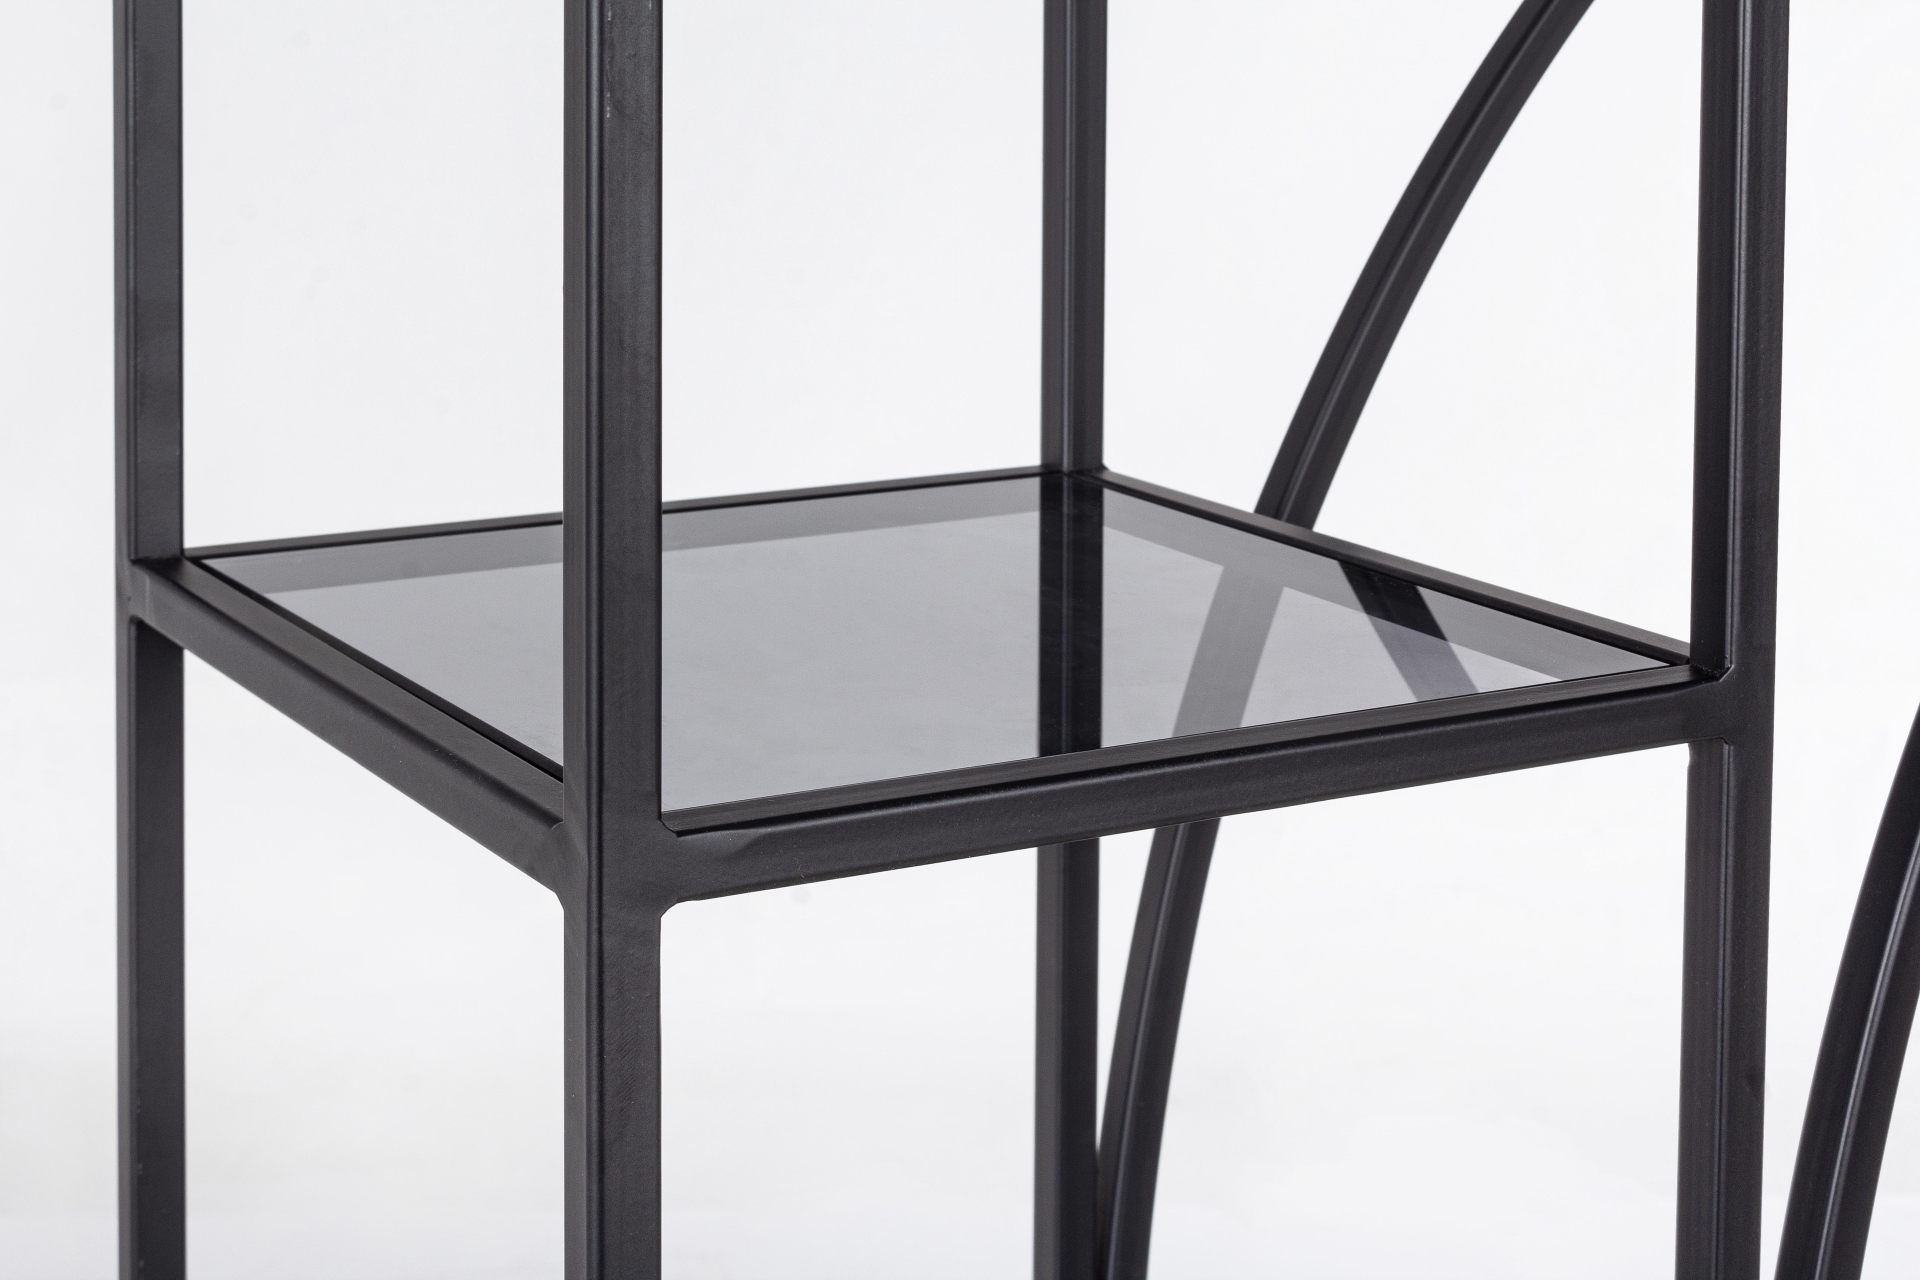 Das Regal Korvet überzeugt mit seinem klassischen Design. Gefertigt wurde es aus Glas. Das Gestell ist aus Metall und hat eine schwarze Farbe. Das Regal verfügt über vier Fächer. Die Breite beträgt 66 cm.